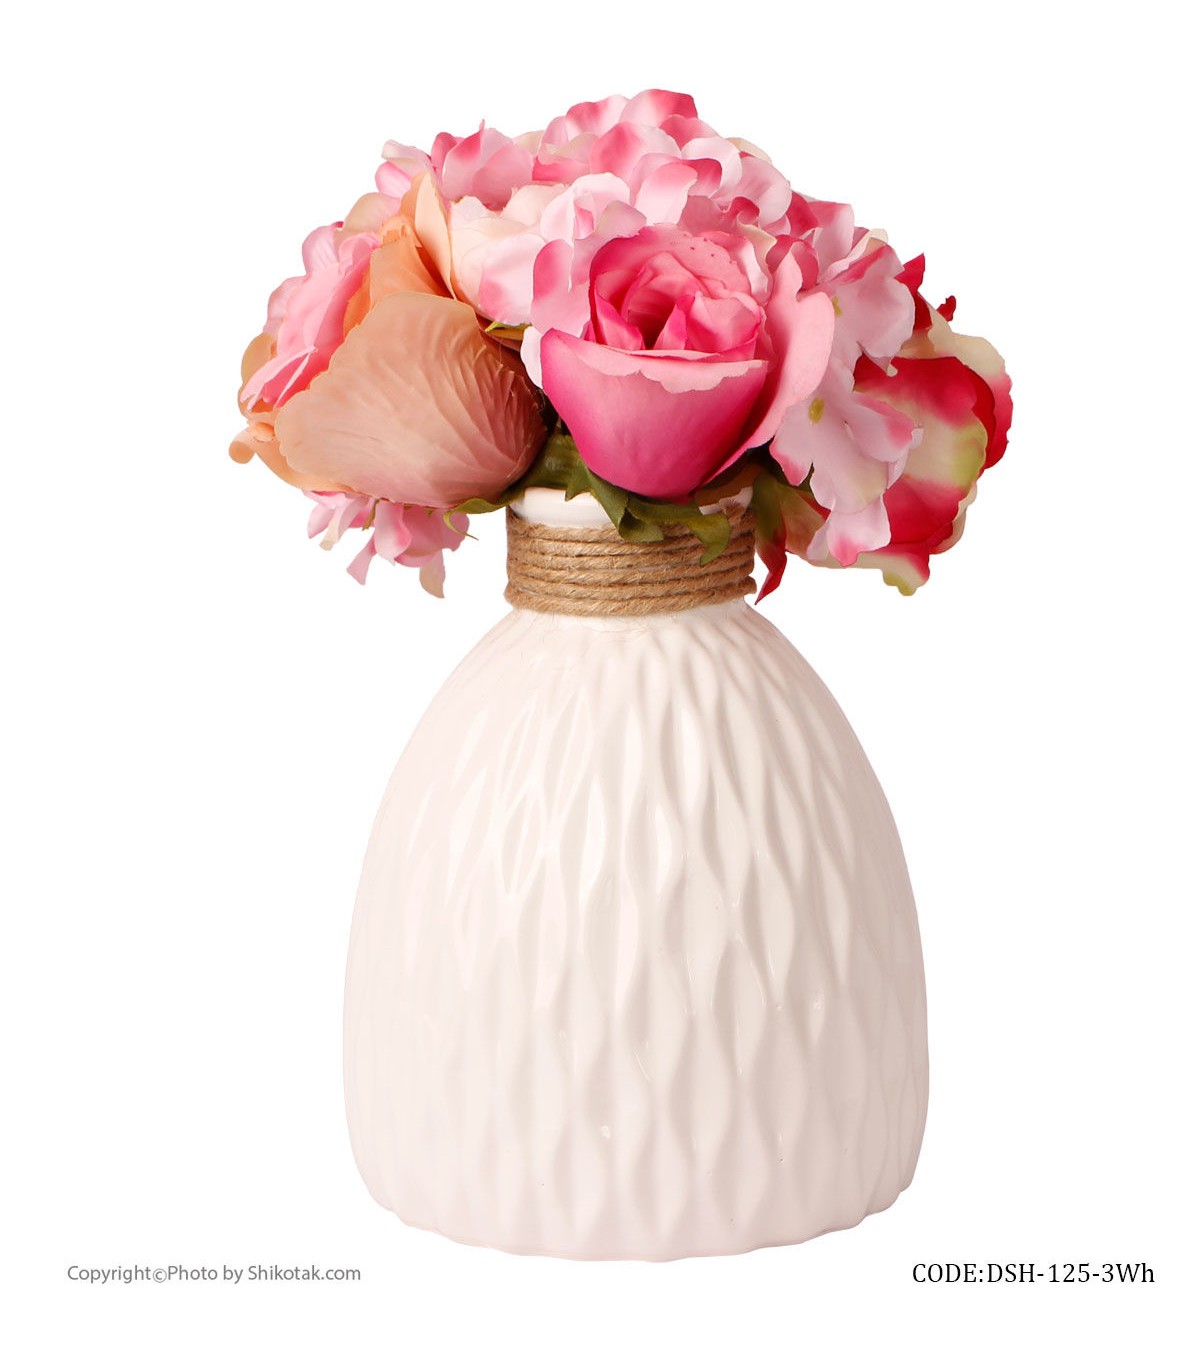 خرید آنلاین گلدان سفید سرامیکی طرحدار لبه کنفی